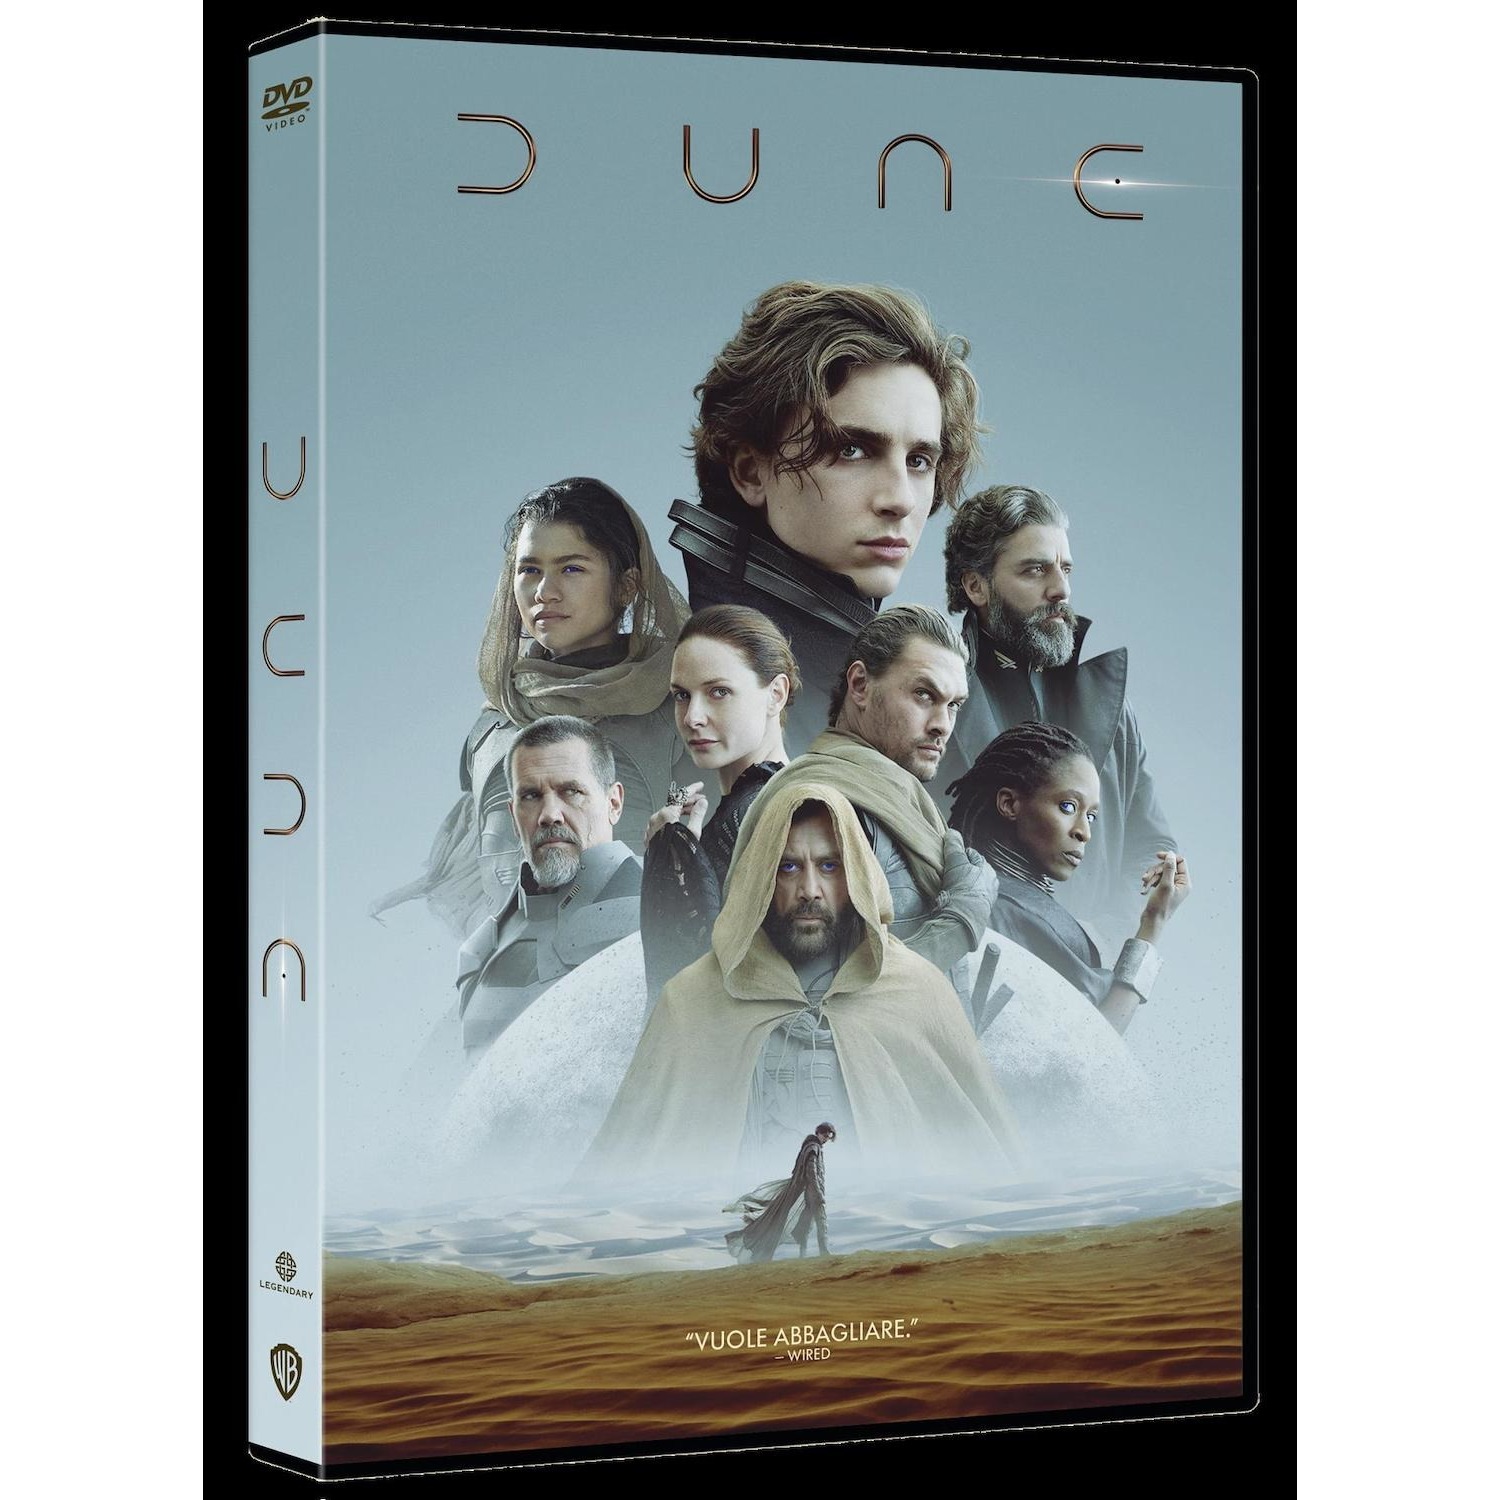 Immagine per DVD Dune da DIMOStore